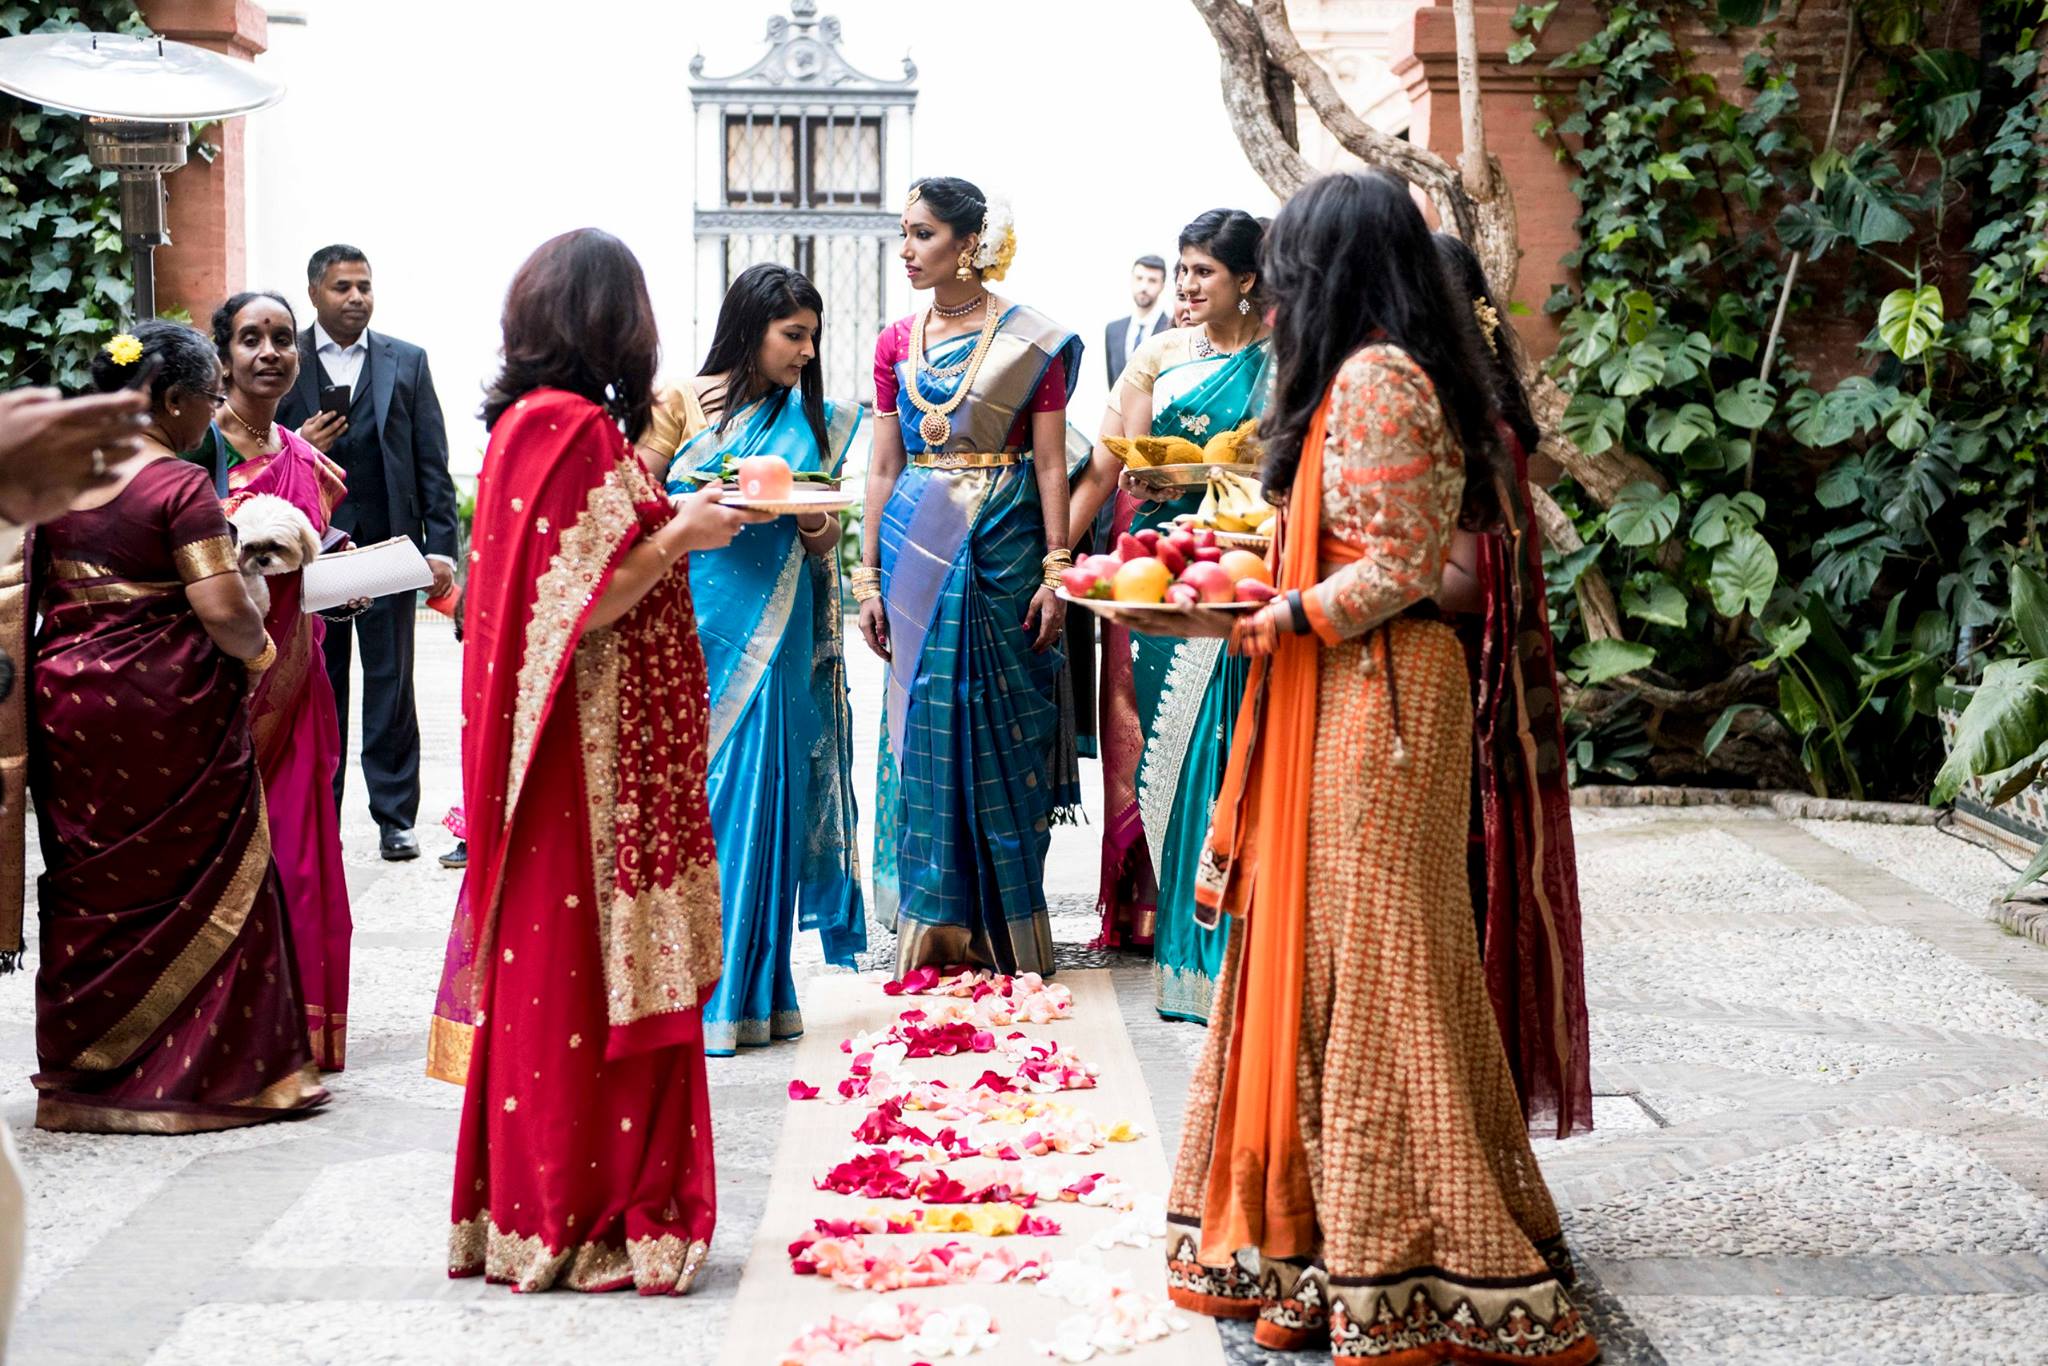 La boda india de Siva y Pooj